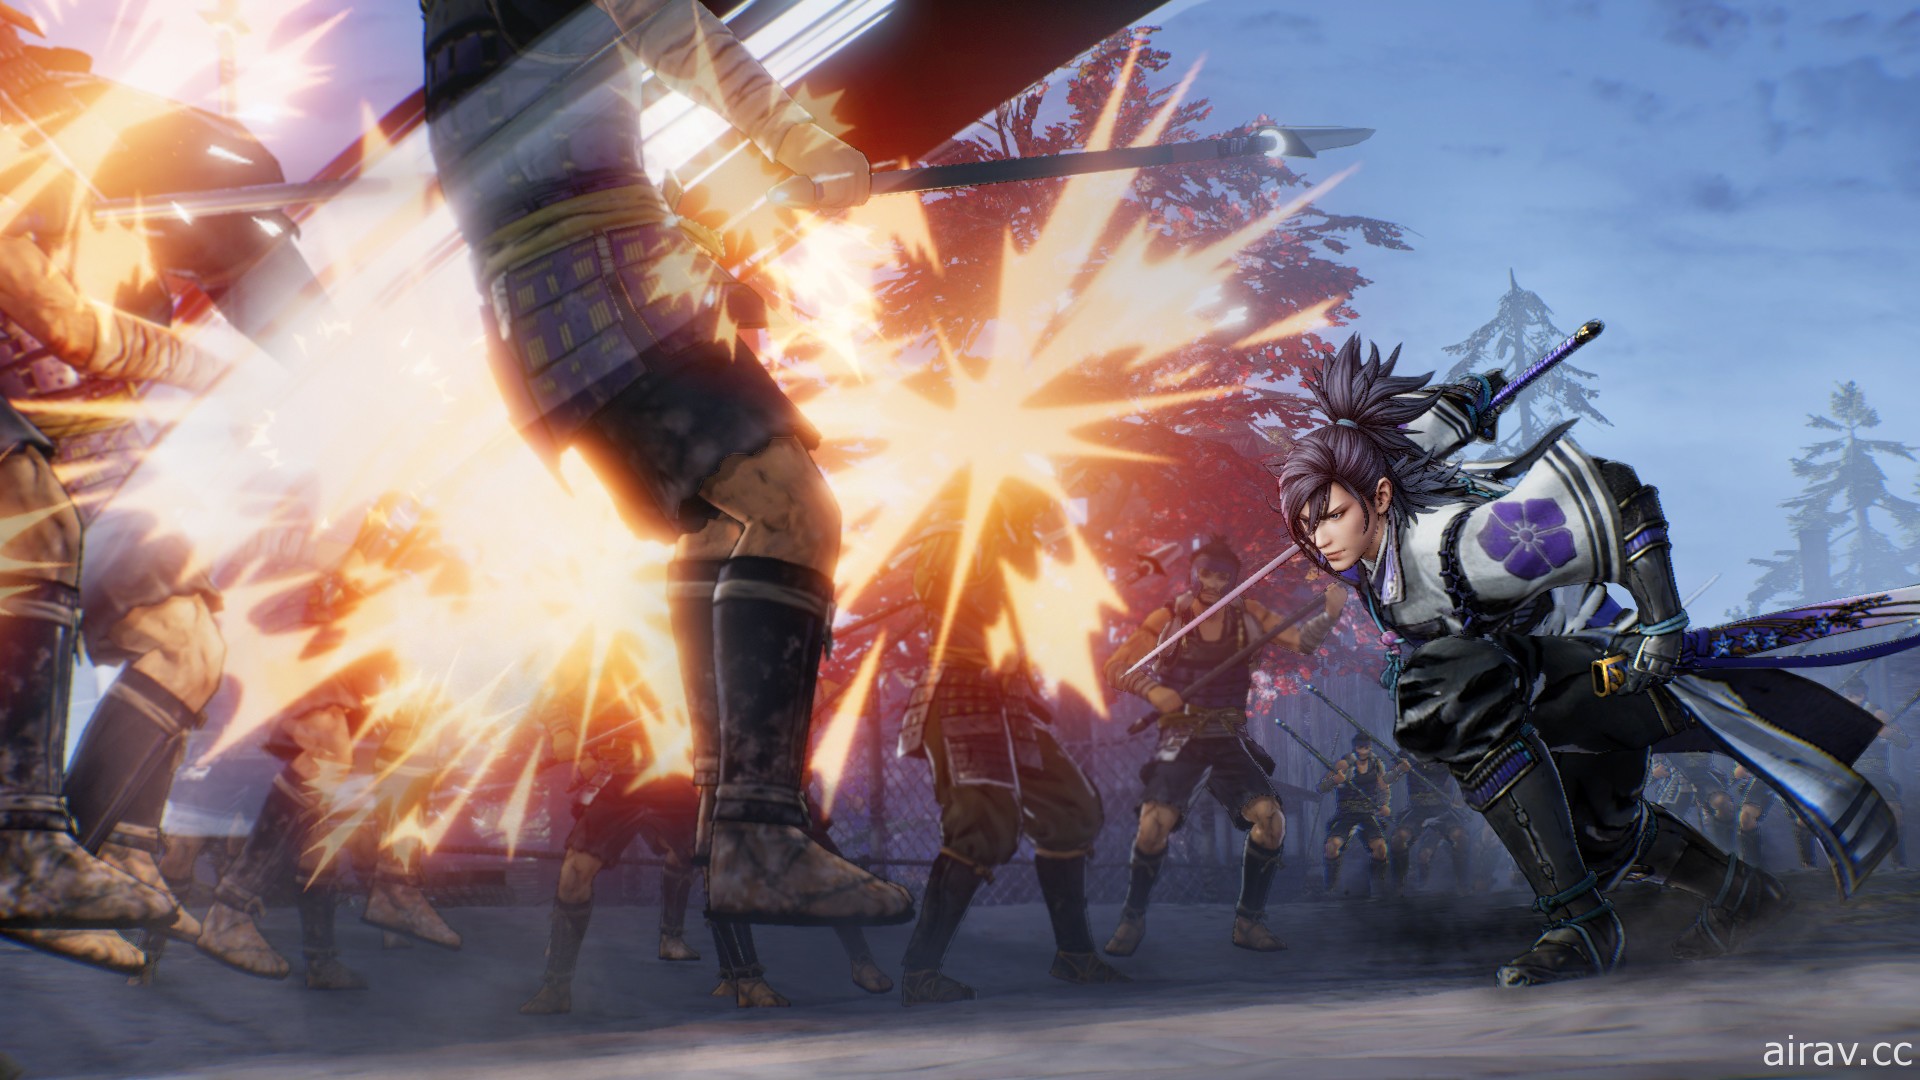 《战国无双 5》PC 版释出试玩版 预定 7 月 27 日上市